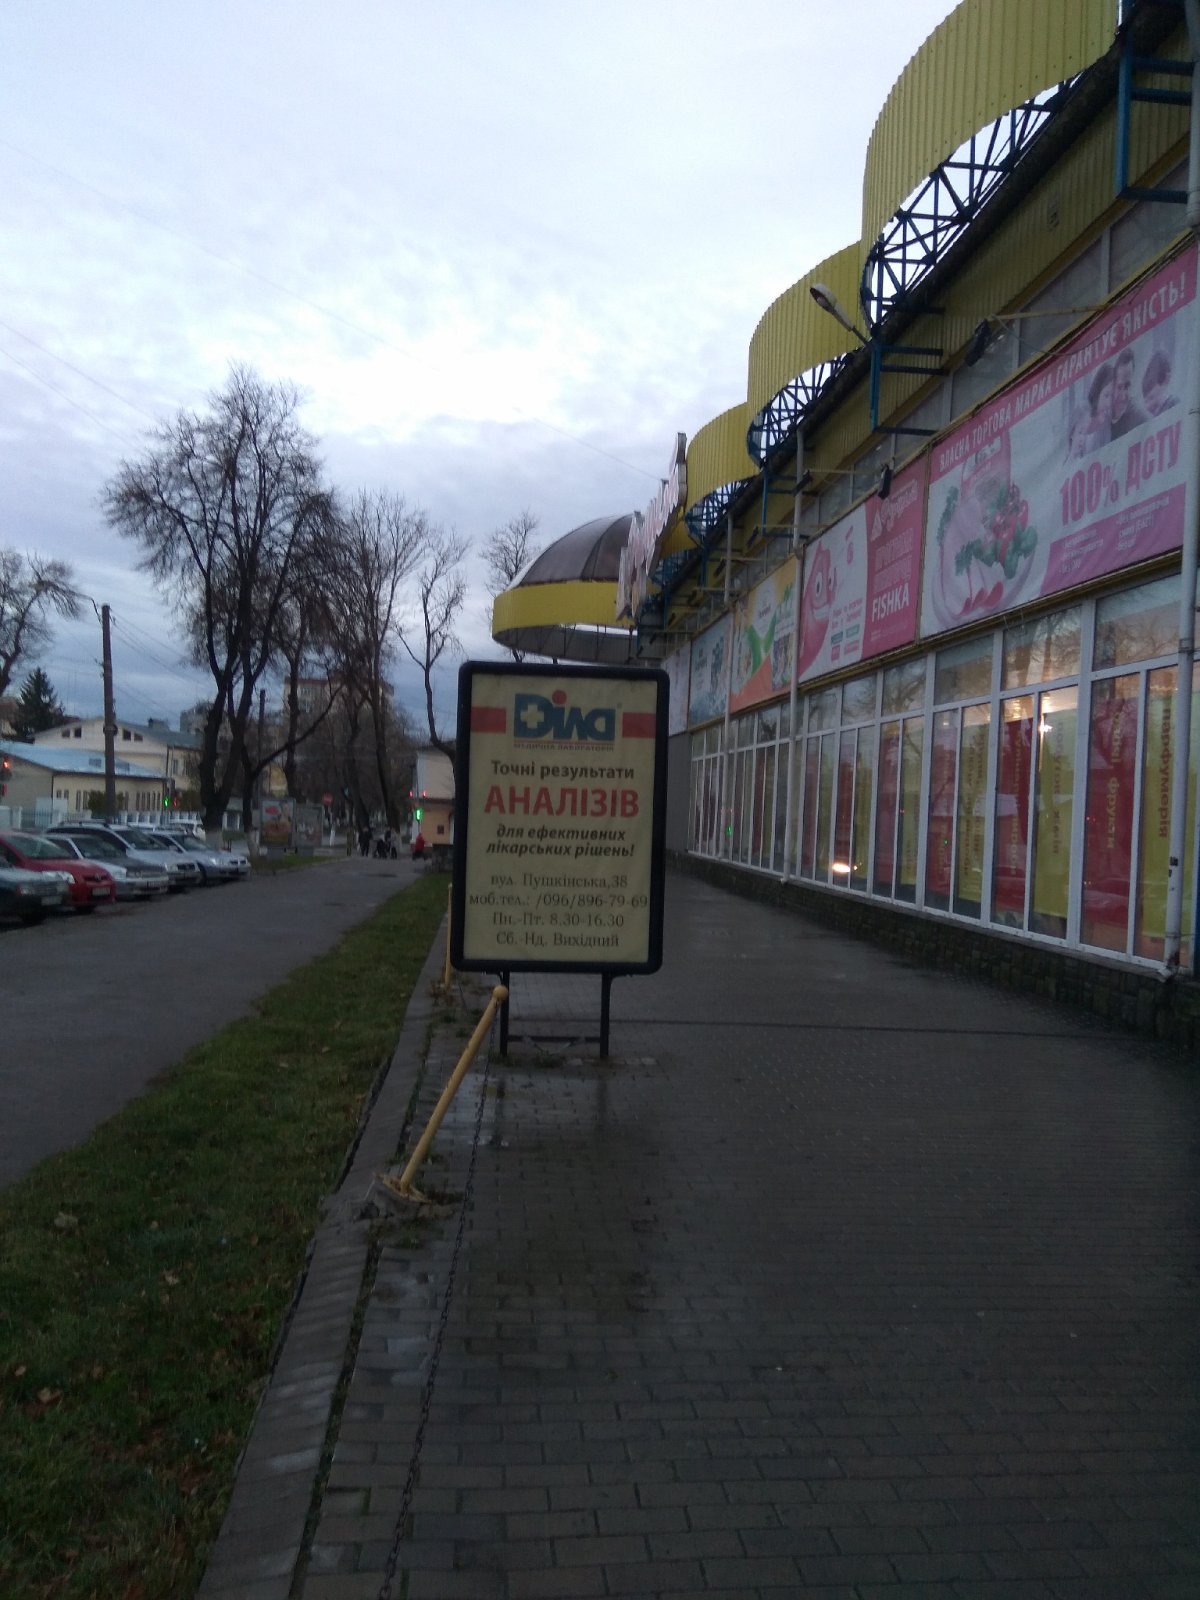 Ситилайт №262584 в городе Каменец-Подольский (Хмельницкая область), размещение наружной рекламы, IDMedia-аренда по самым низким ценам!